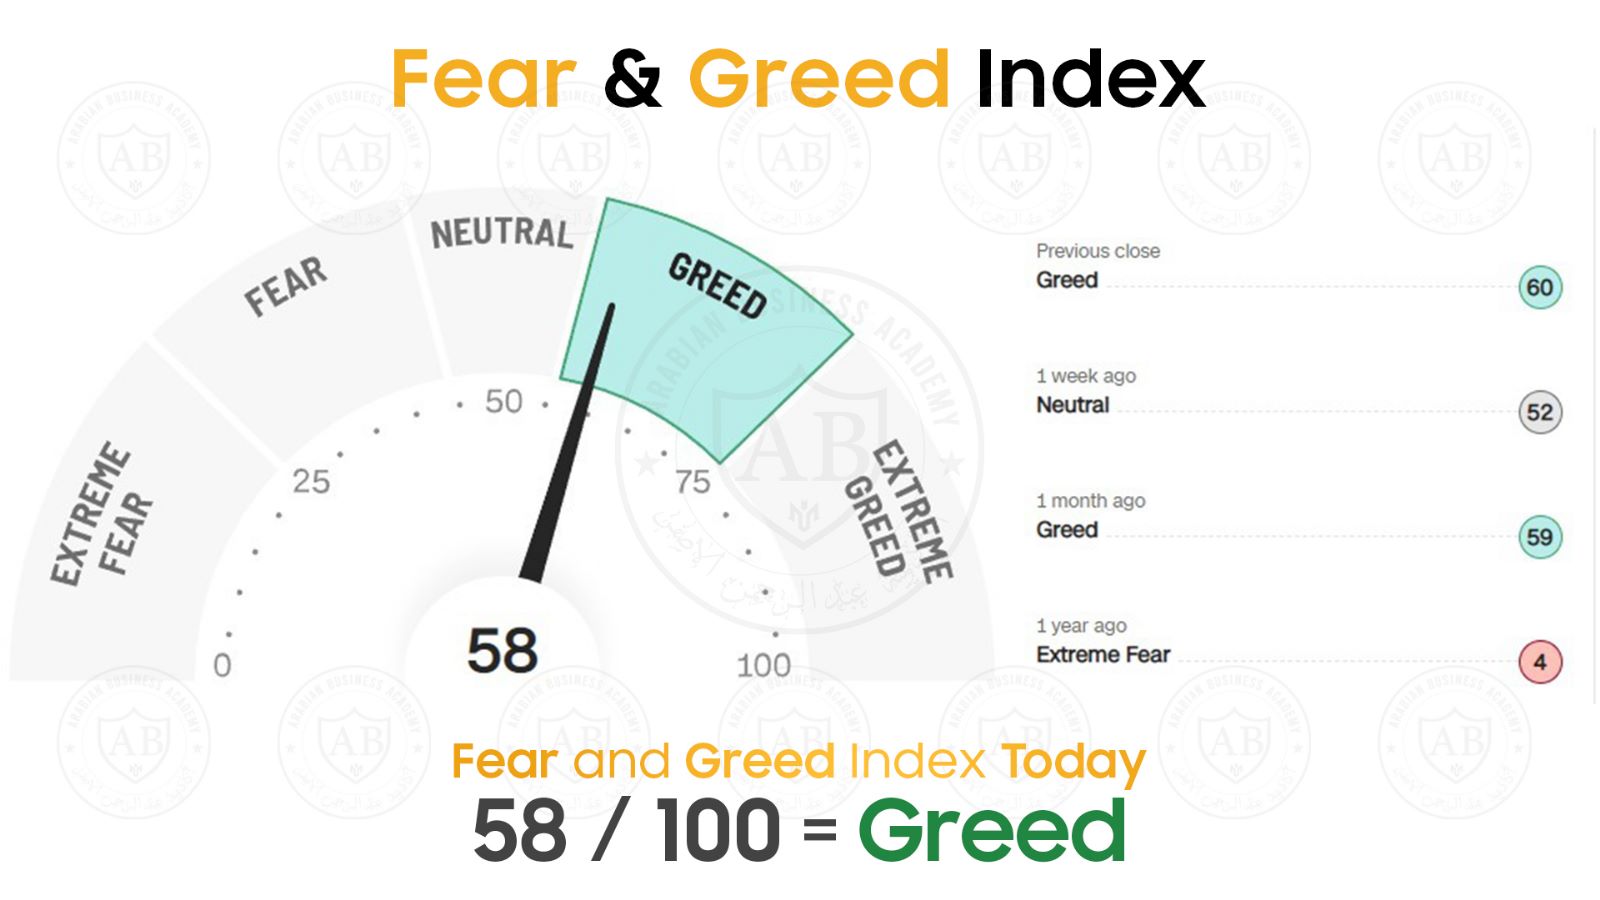 مؤشر  Fear and Greed  في أسواق الأسهم يشير  الى 58  /100  لجلسة اليوم